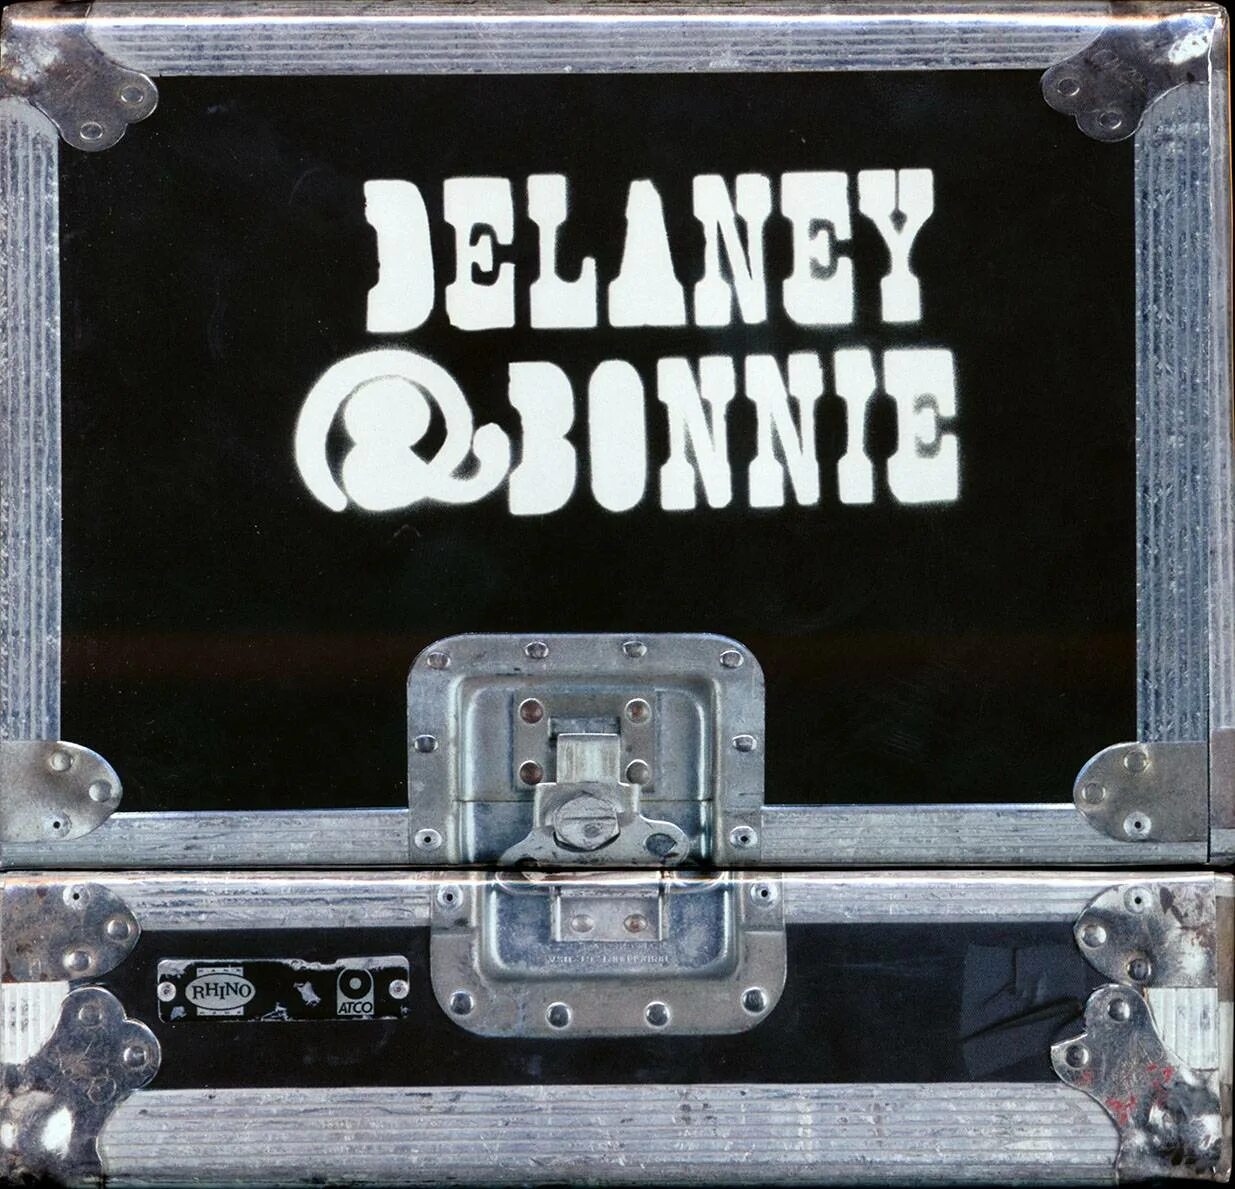 Flac 2010. Delaney Bonnie friends. Delaney & Bonnie & friends with Eric Clapton – on Tour. Delaney,Bonnie & friends группа. Eric Clapton discography Delaney & Bonnie & friends with Eric Clapton – on Tour.